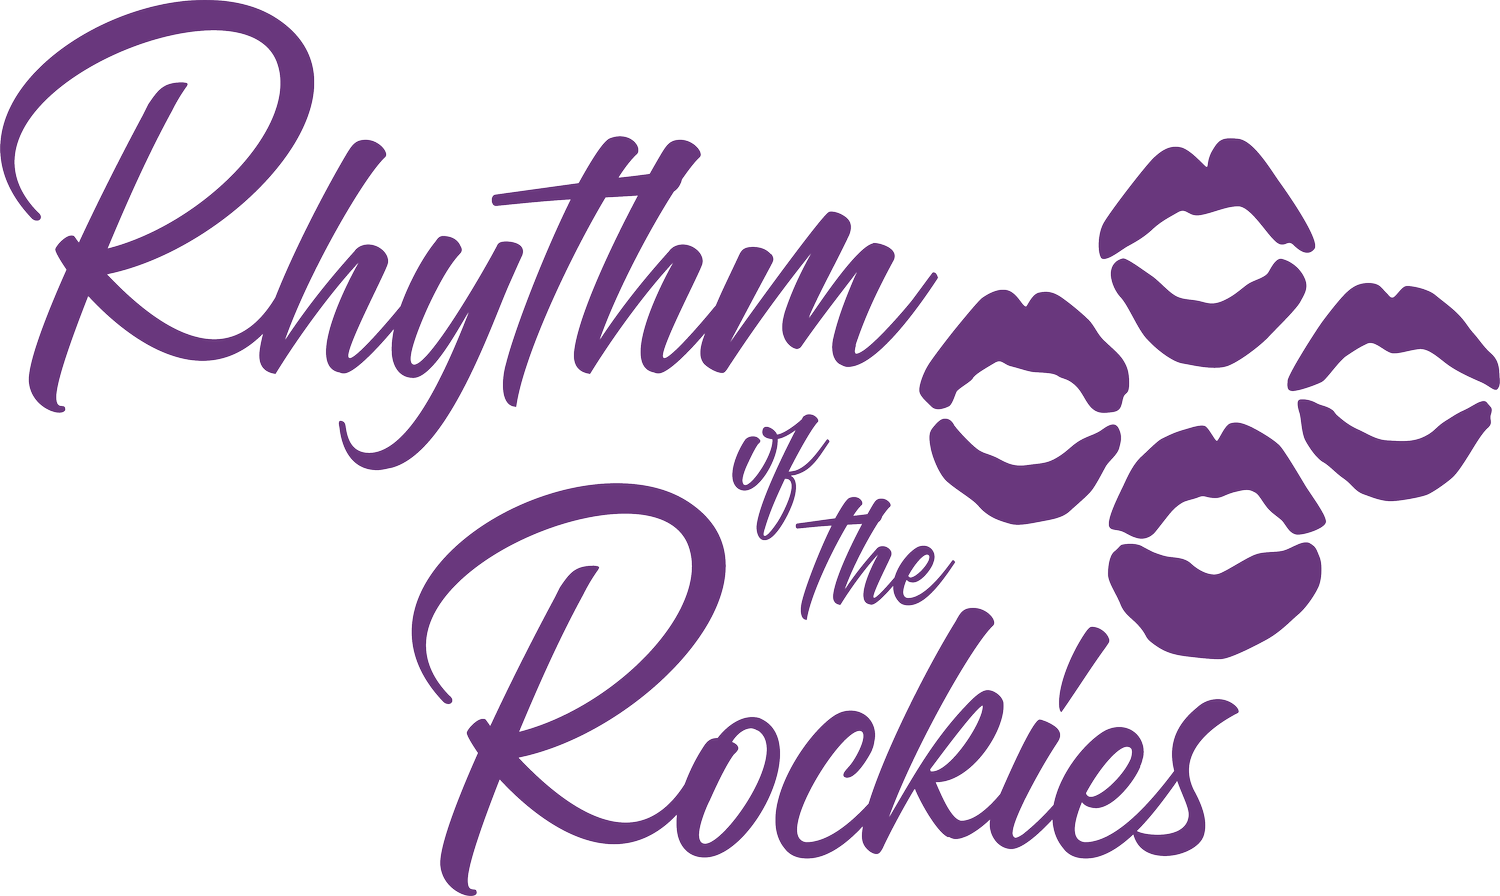 Rhythm of the Rockies